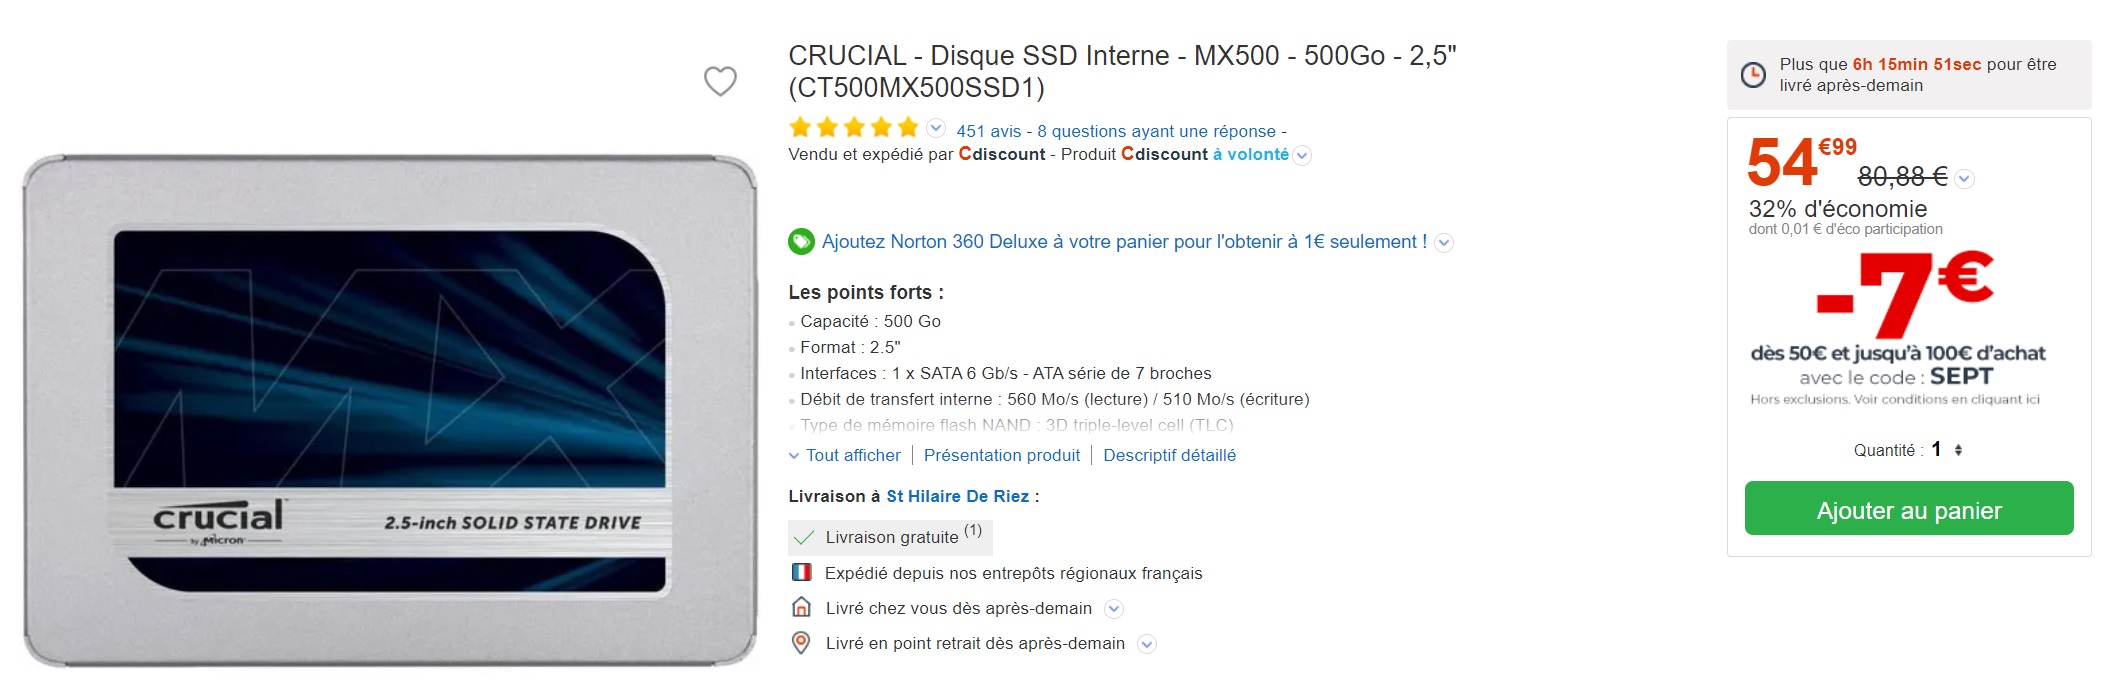 Le SSD Crucial MX500 de 500 Go est à un excellent prix grâce à ce